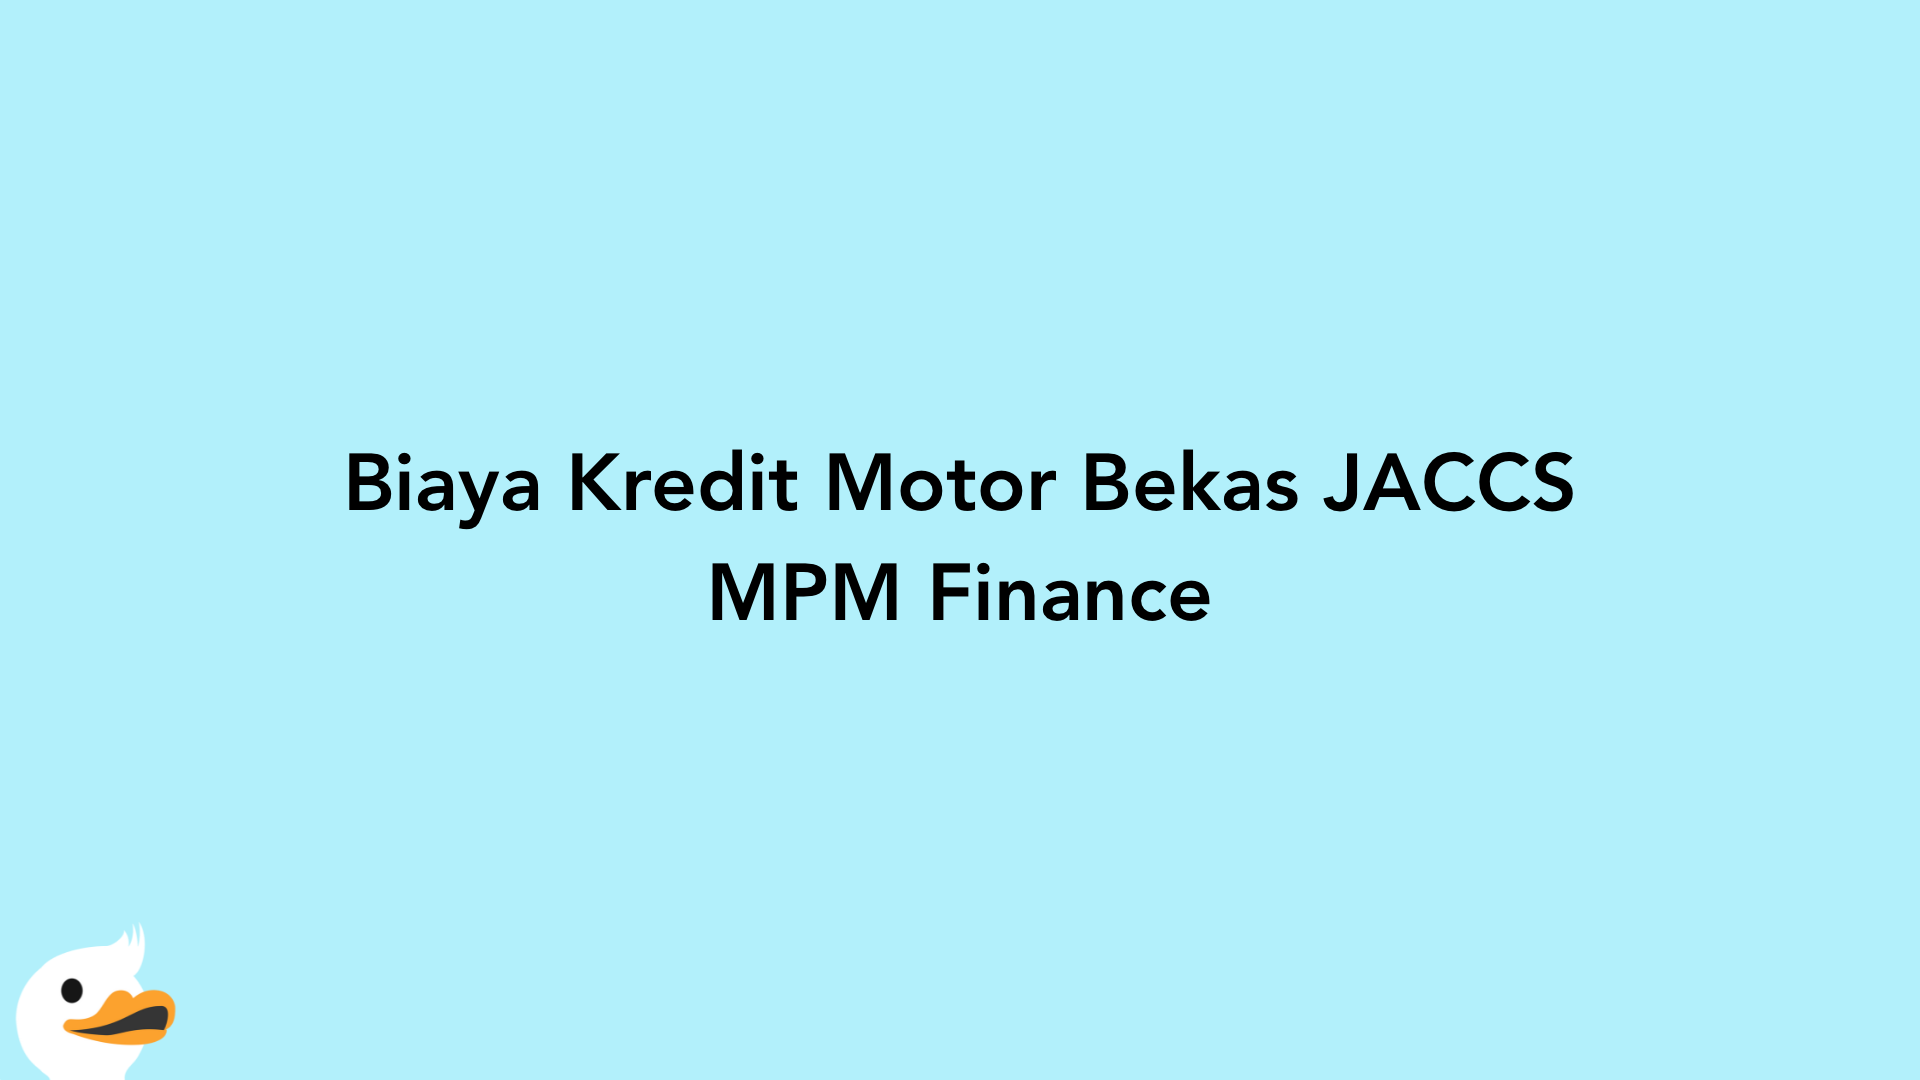 Biaya Kredit Motor Bekas JACCS MPM Finance